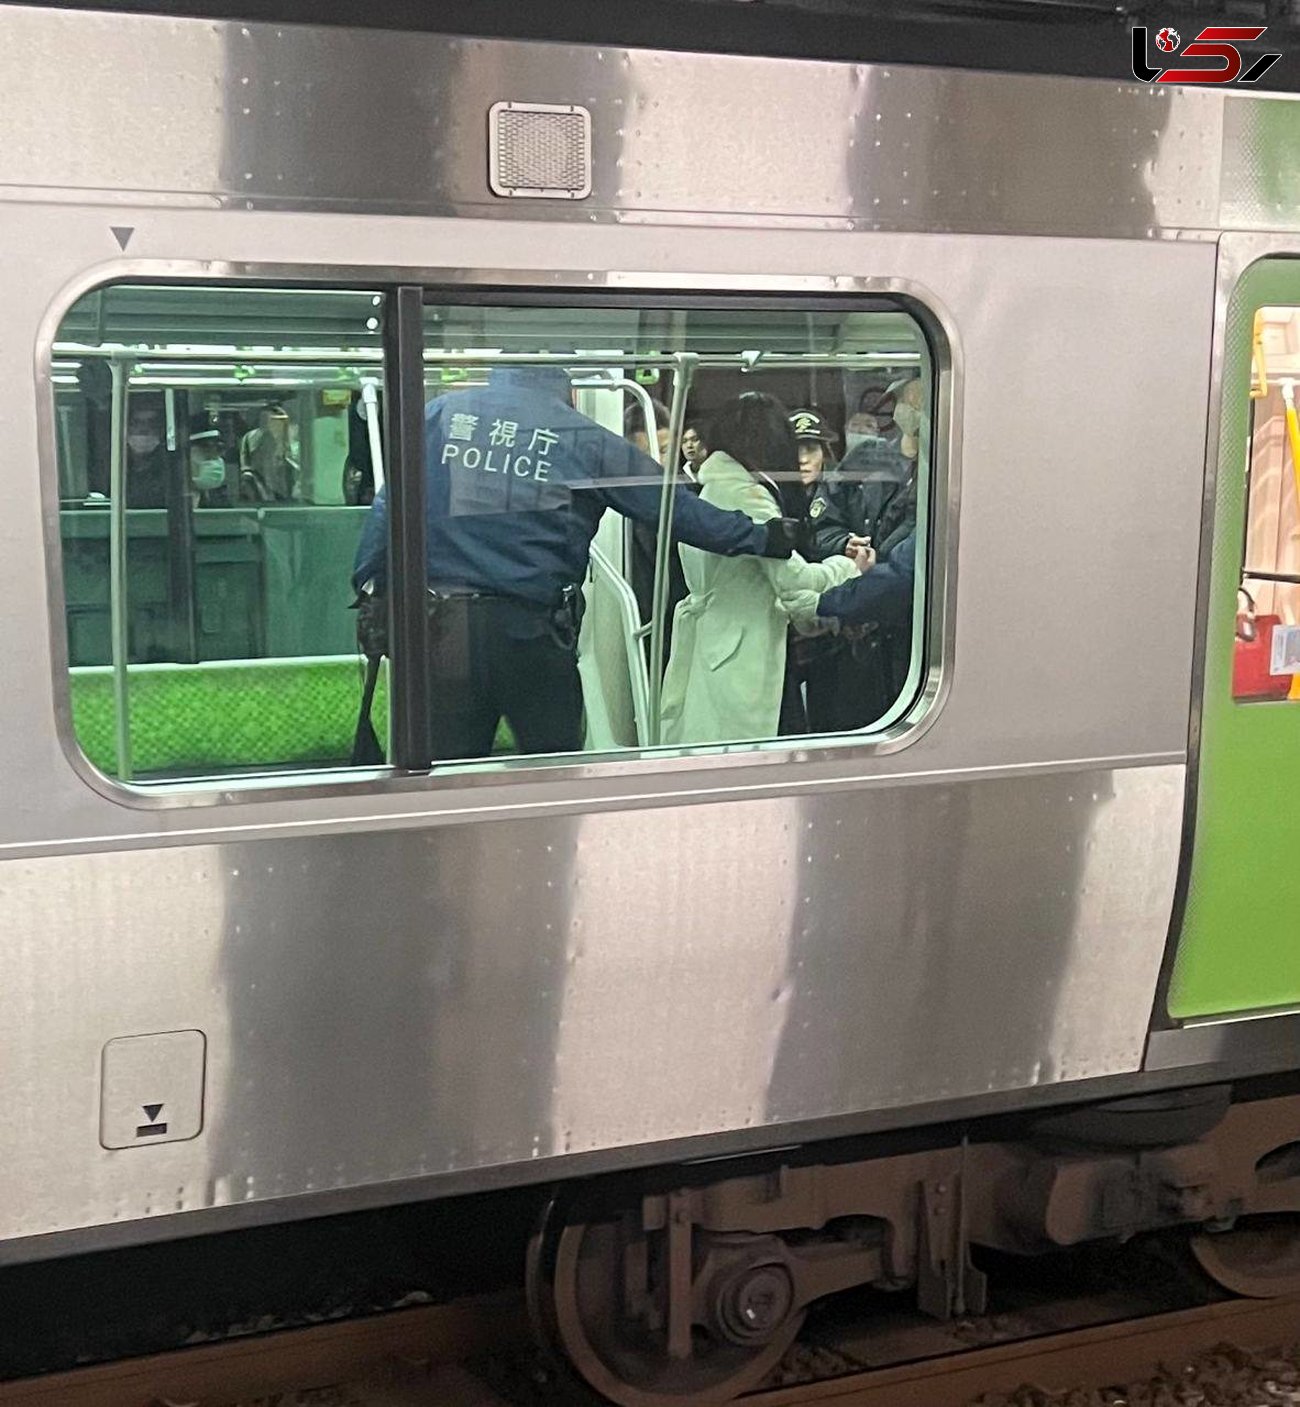 حمله دختر مسلح با چاقو به مسافران مترو در توکیو / 4 نفر کشته شدند + فیلم